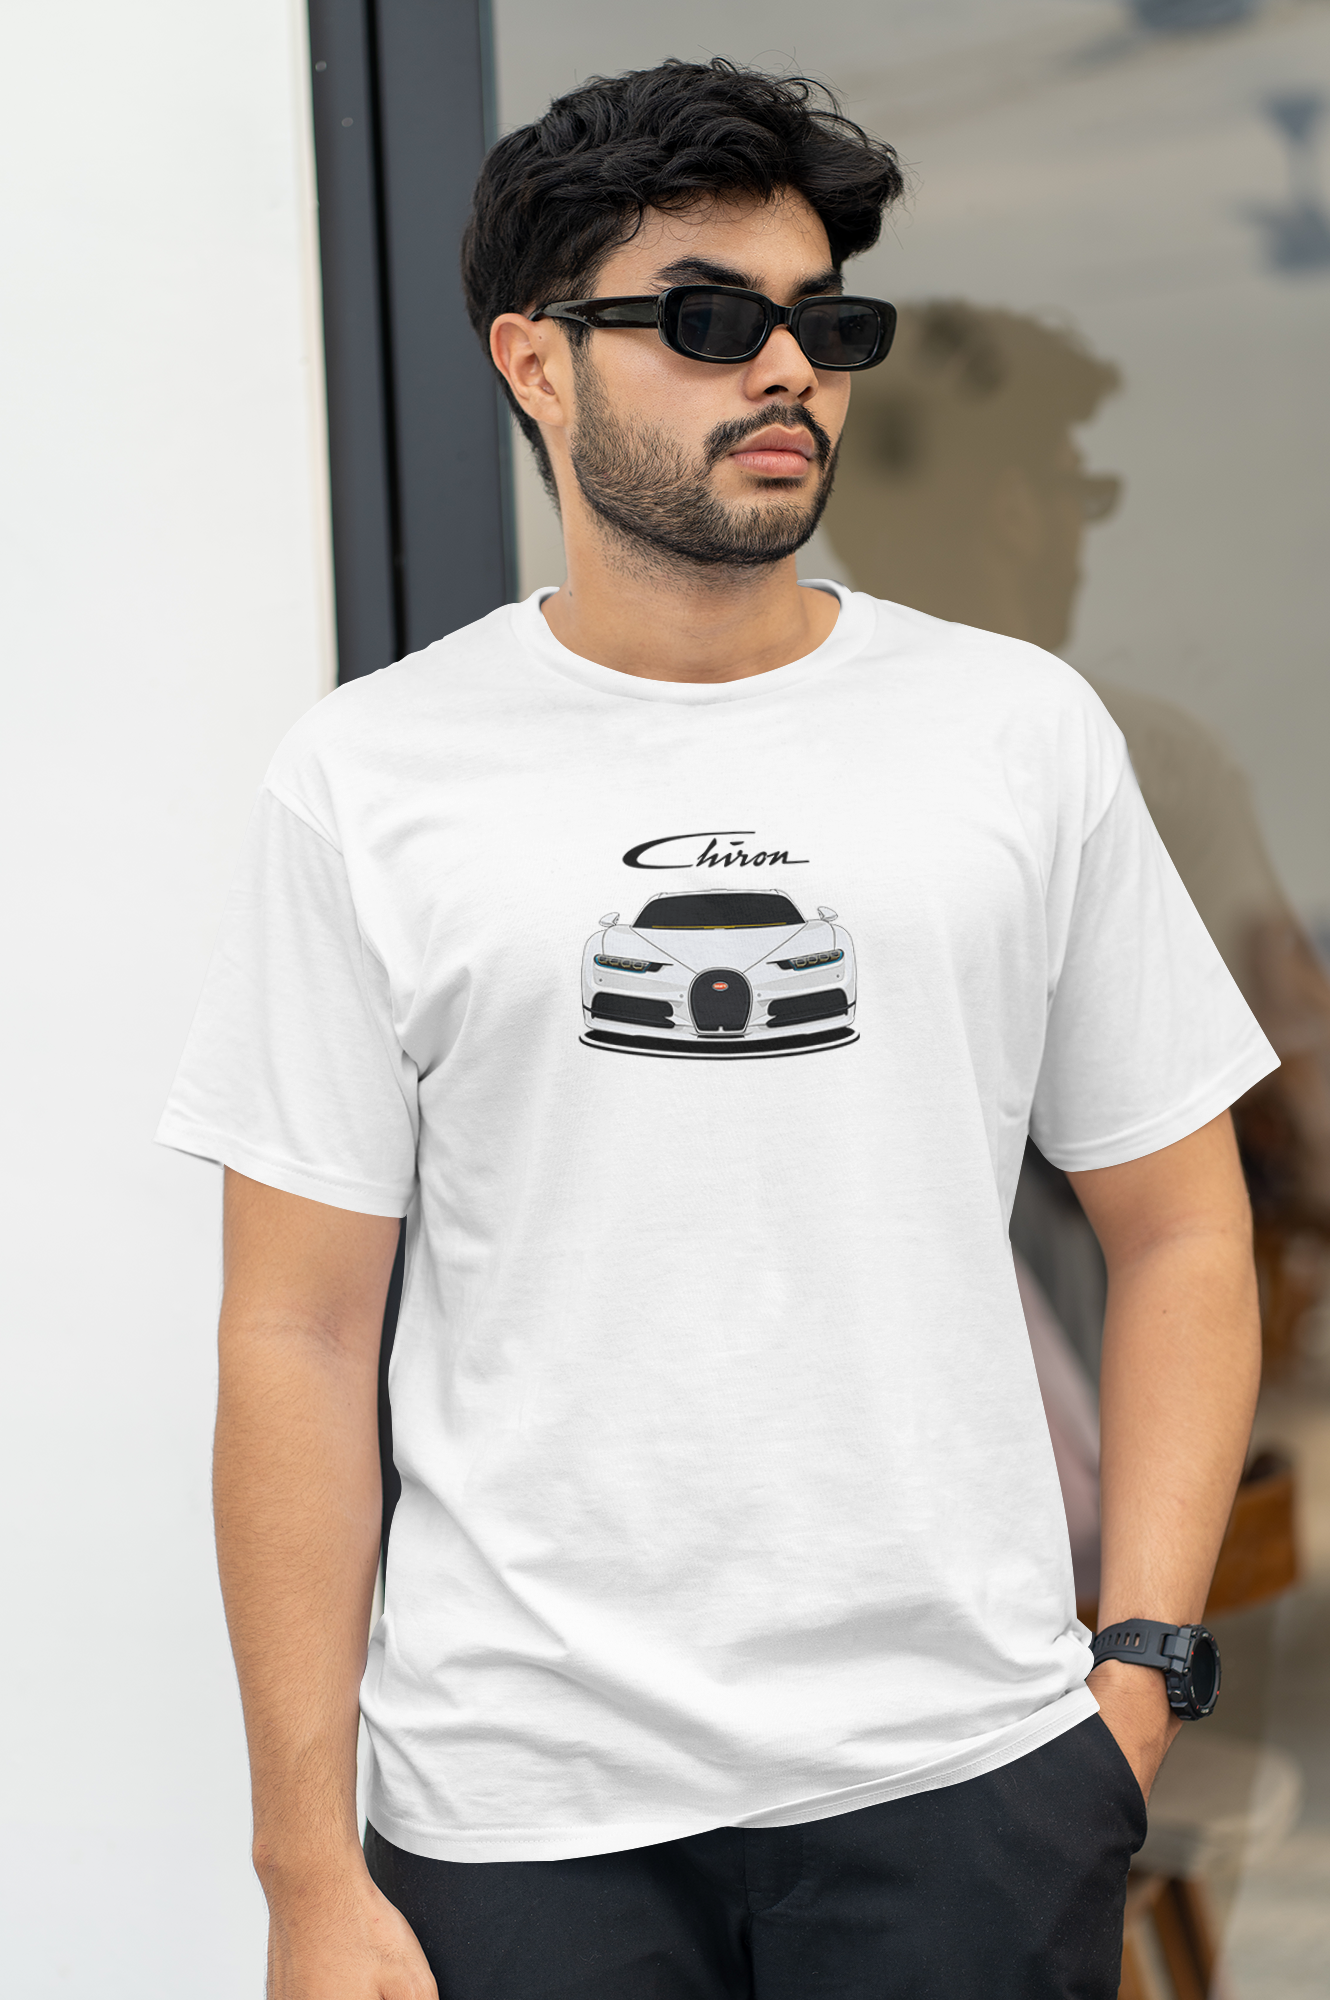 – Bugatti anzianidesigns Chiron T-shirt White